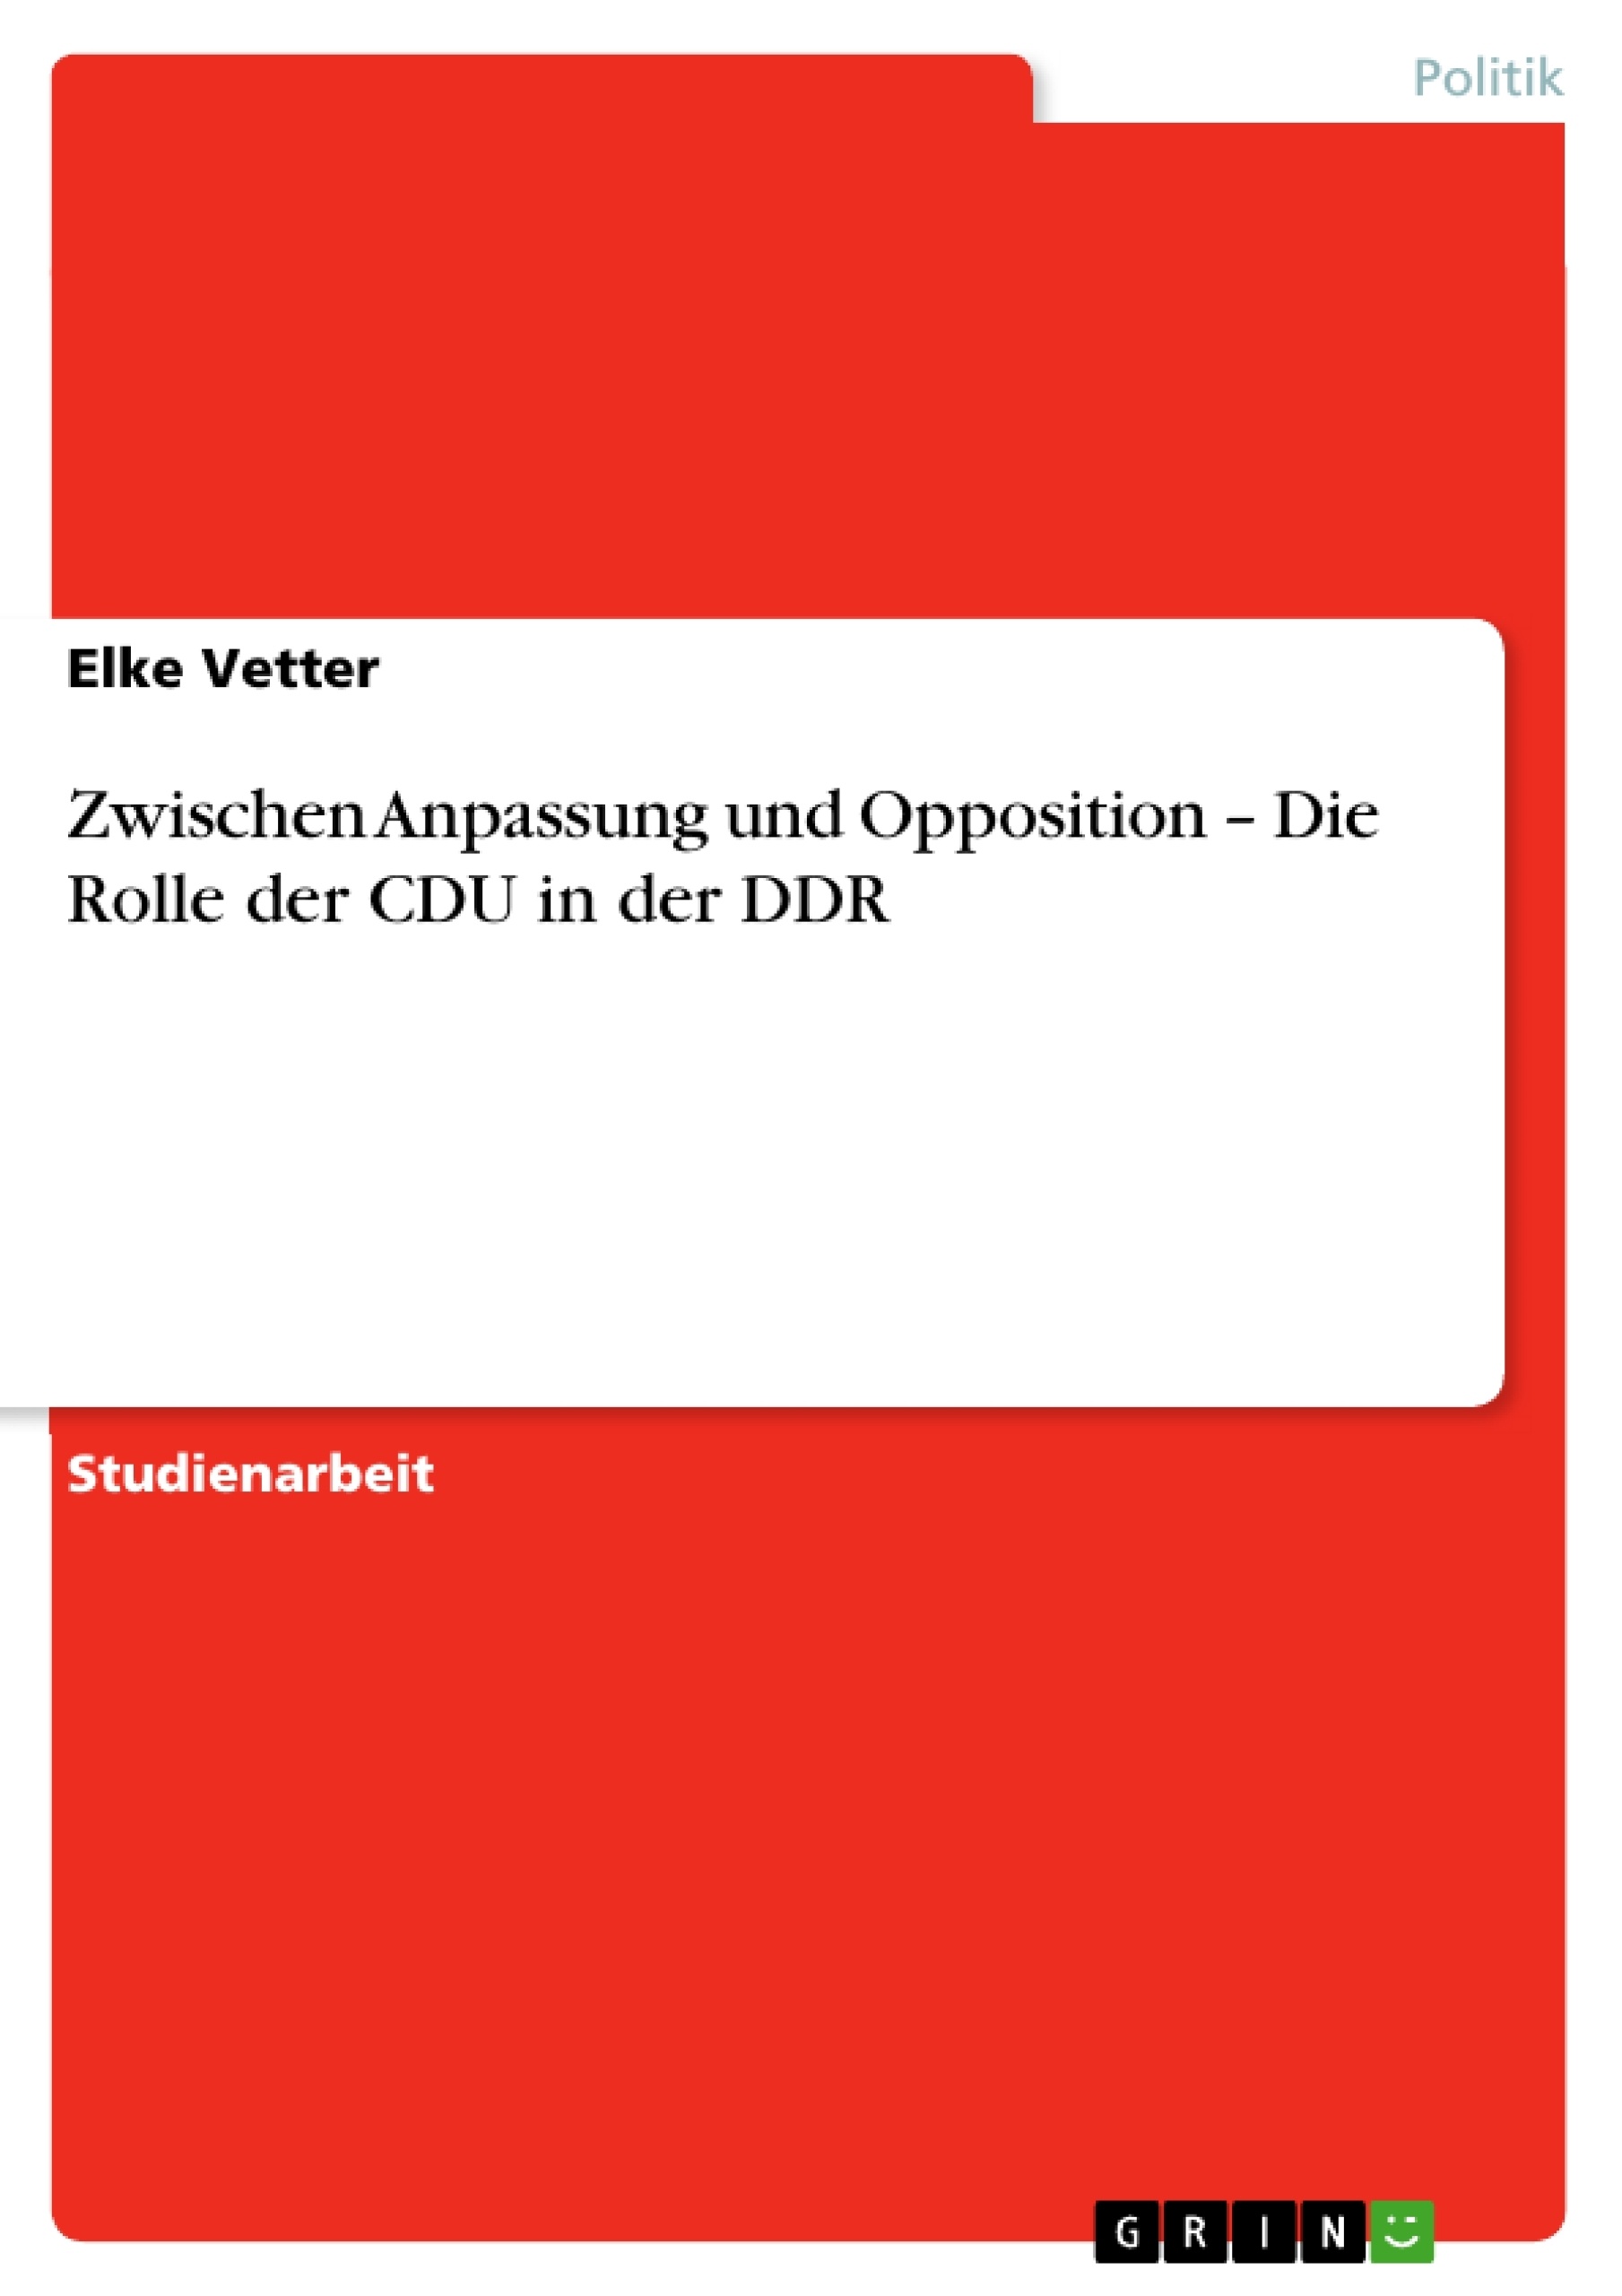 Titel: Zwischen Anpassung und Opposition – Die Rolle der CDU in der DDR